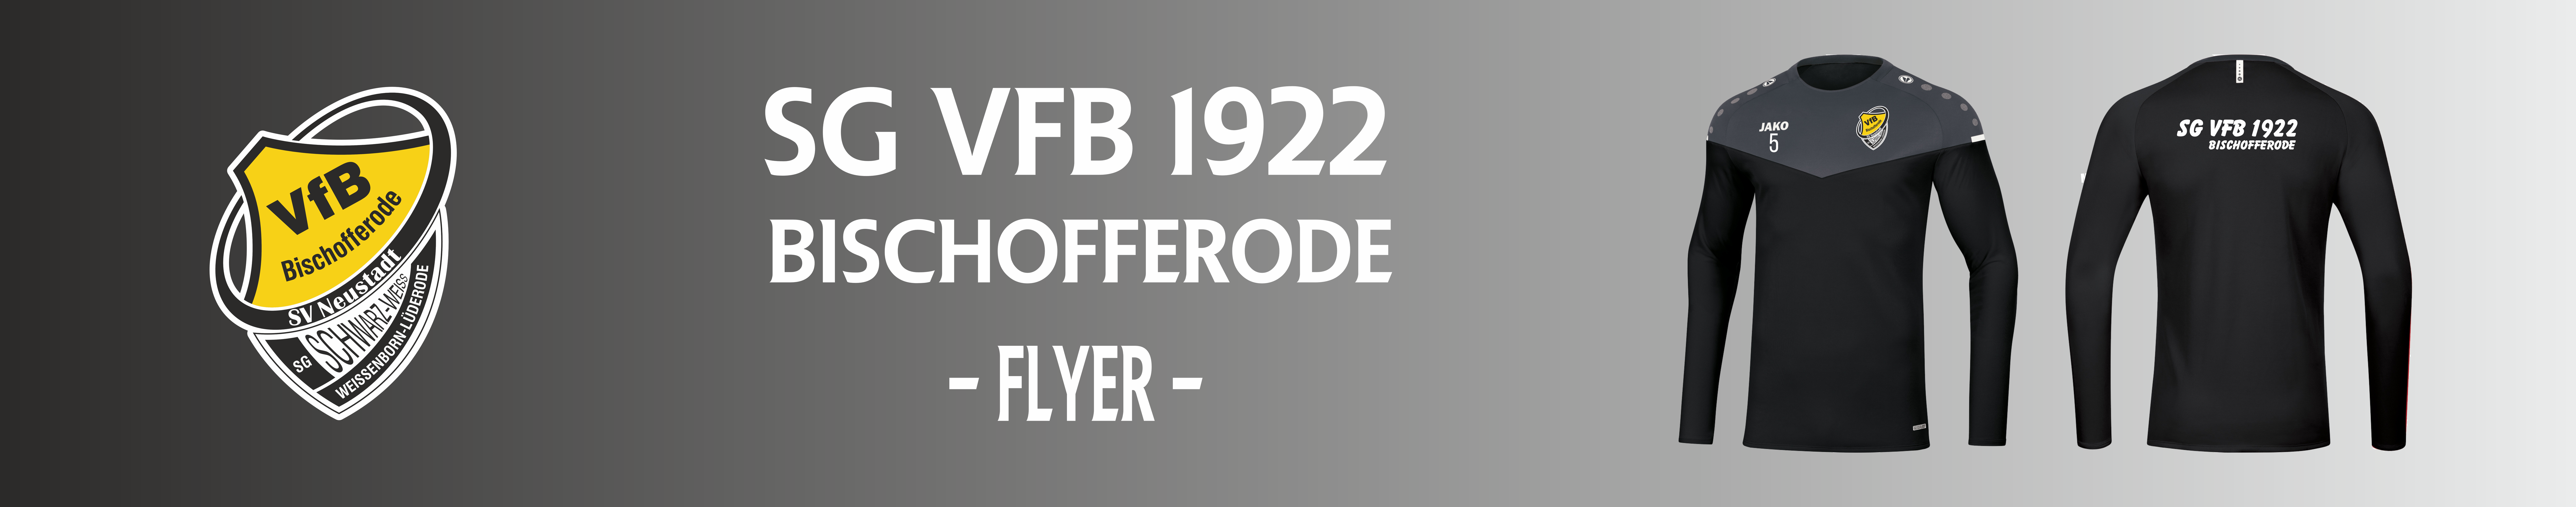 Bischofferode-FLYER Title Image